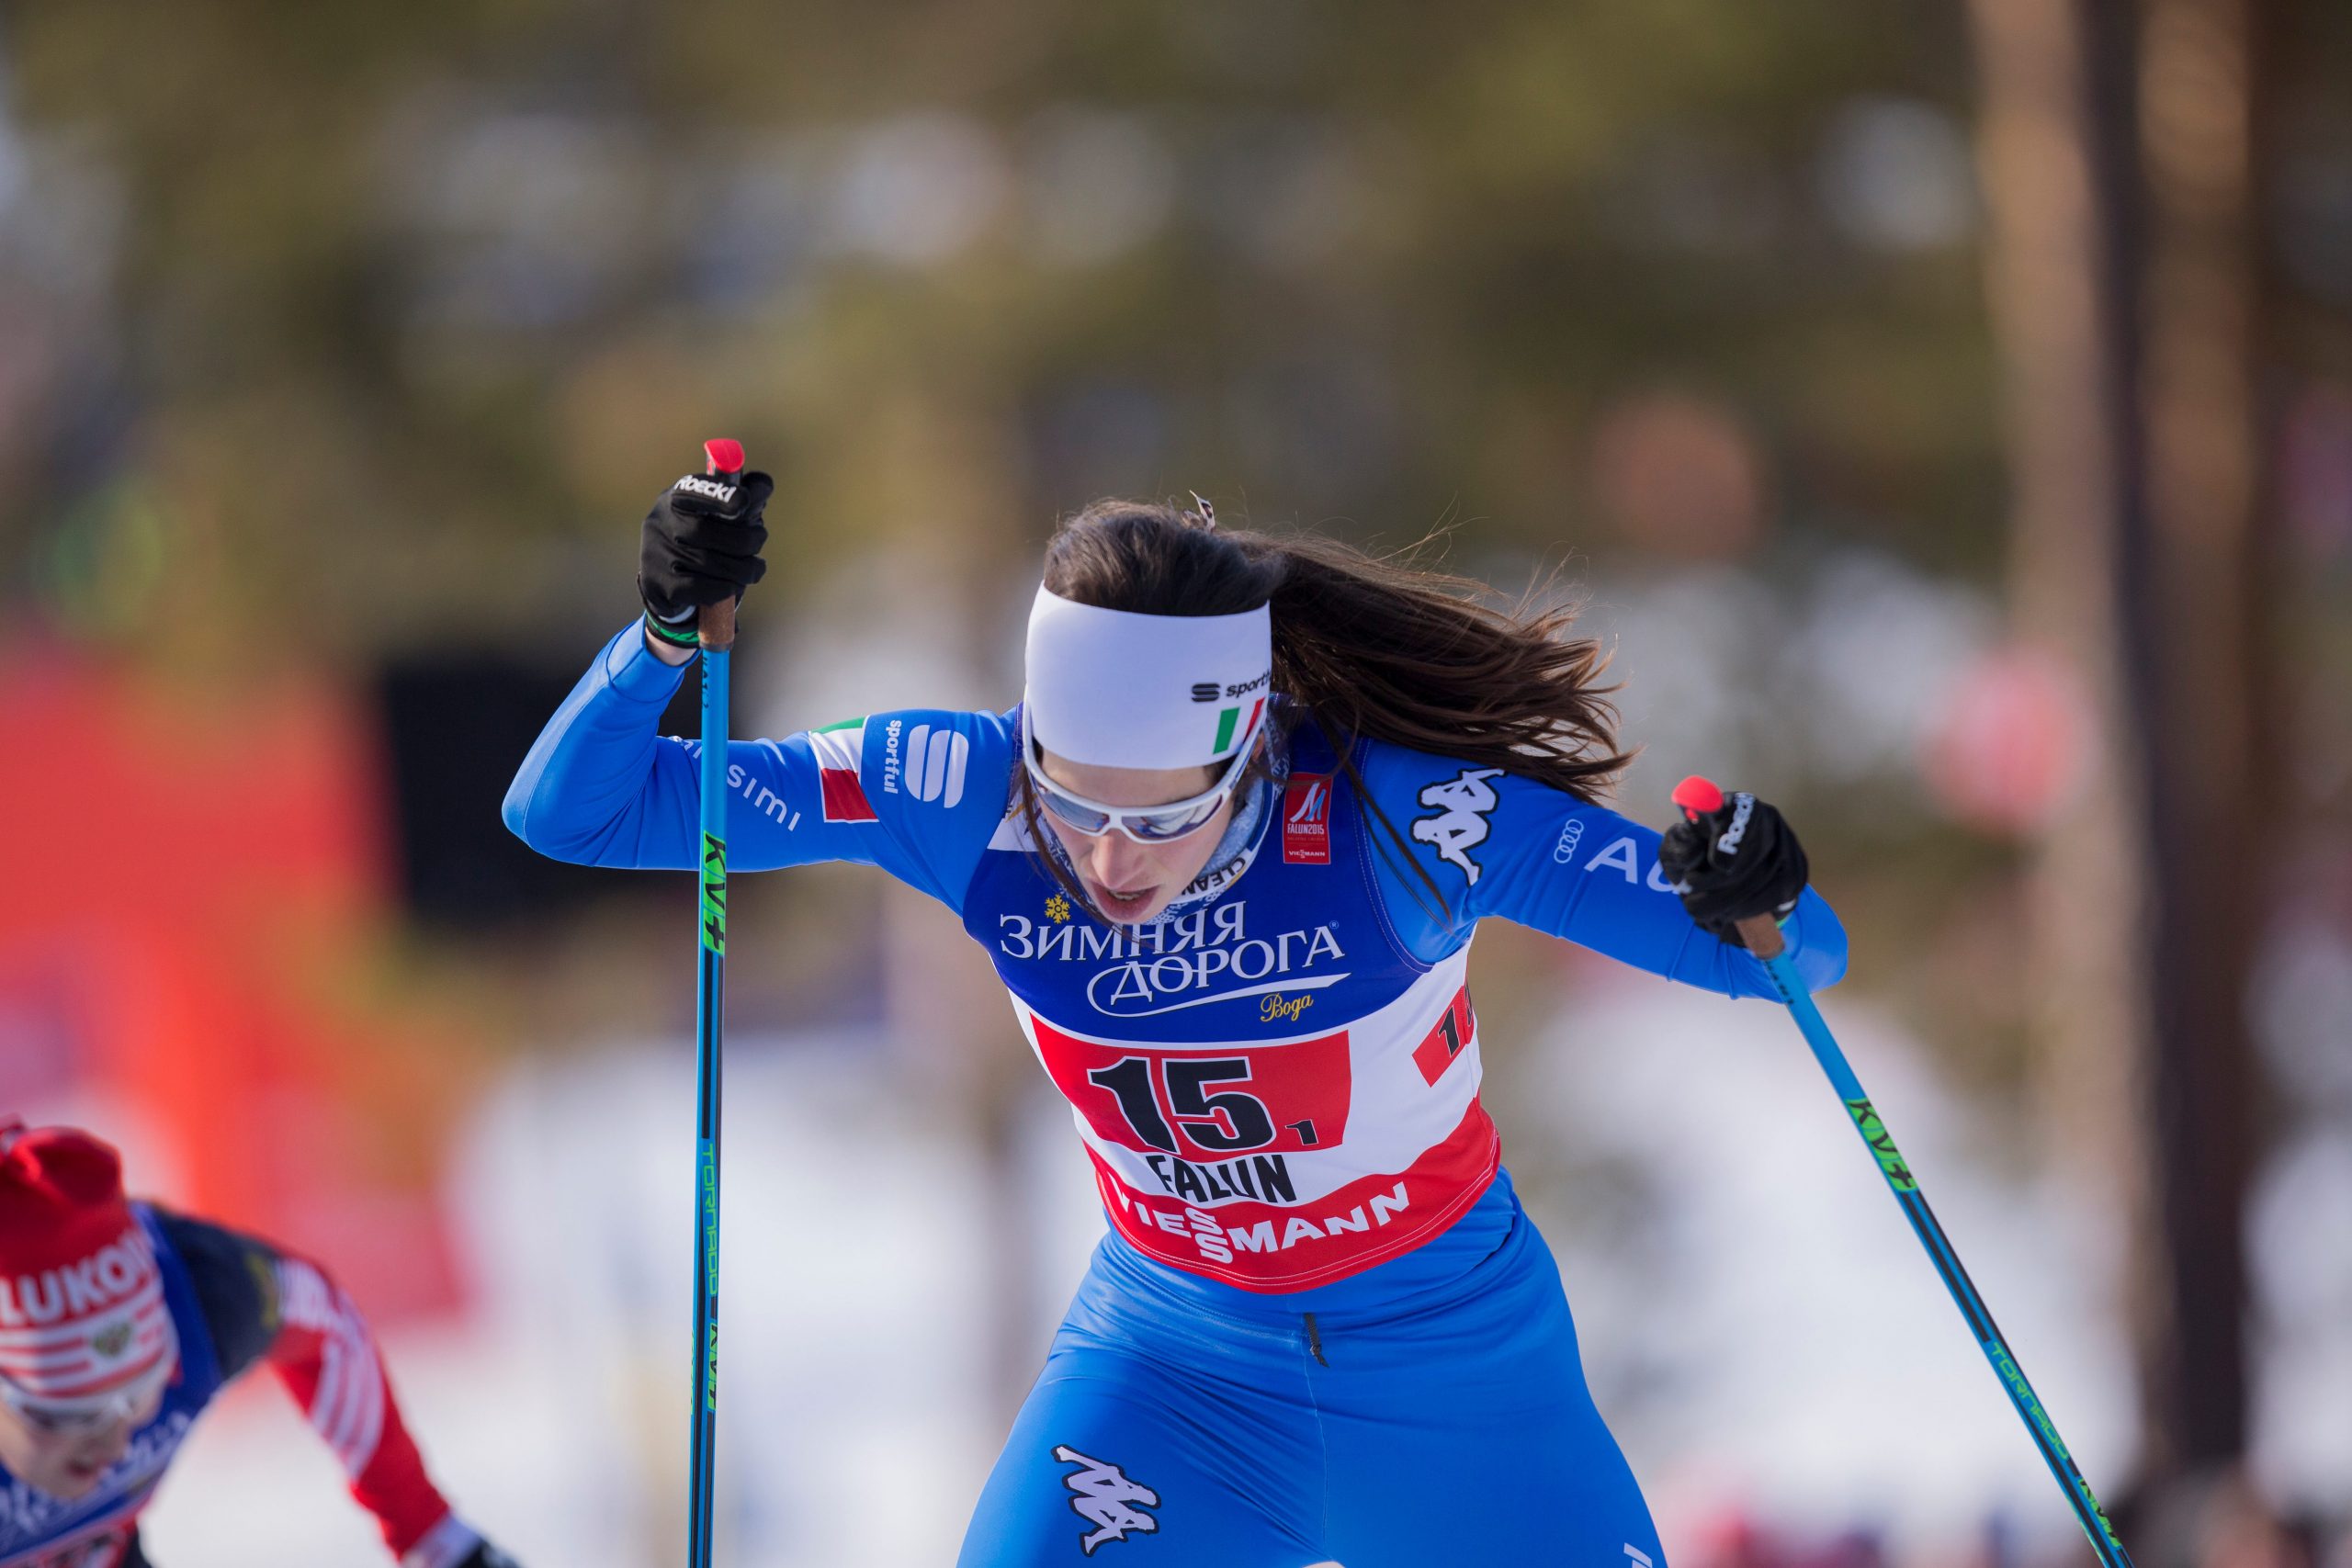 Ilaria De Bertolis, l'azzurra che sarà impegnata domani nella 10 km femminile TL. (Photo: NordicFocus)